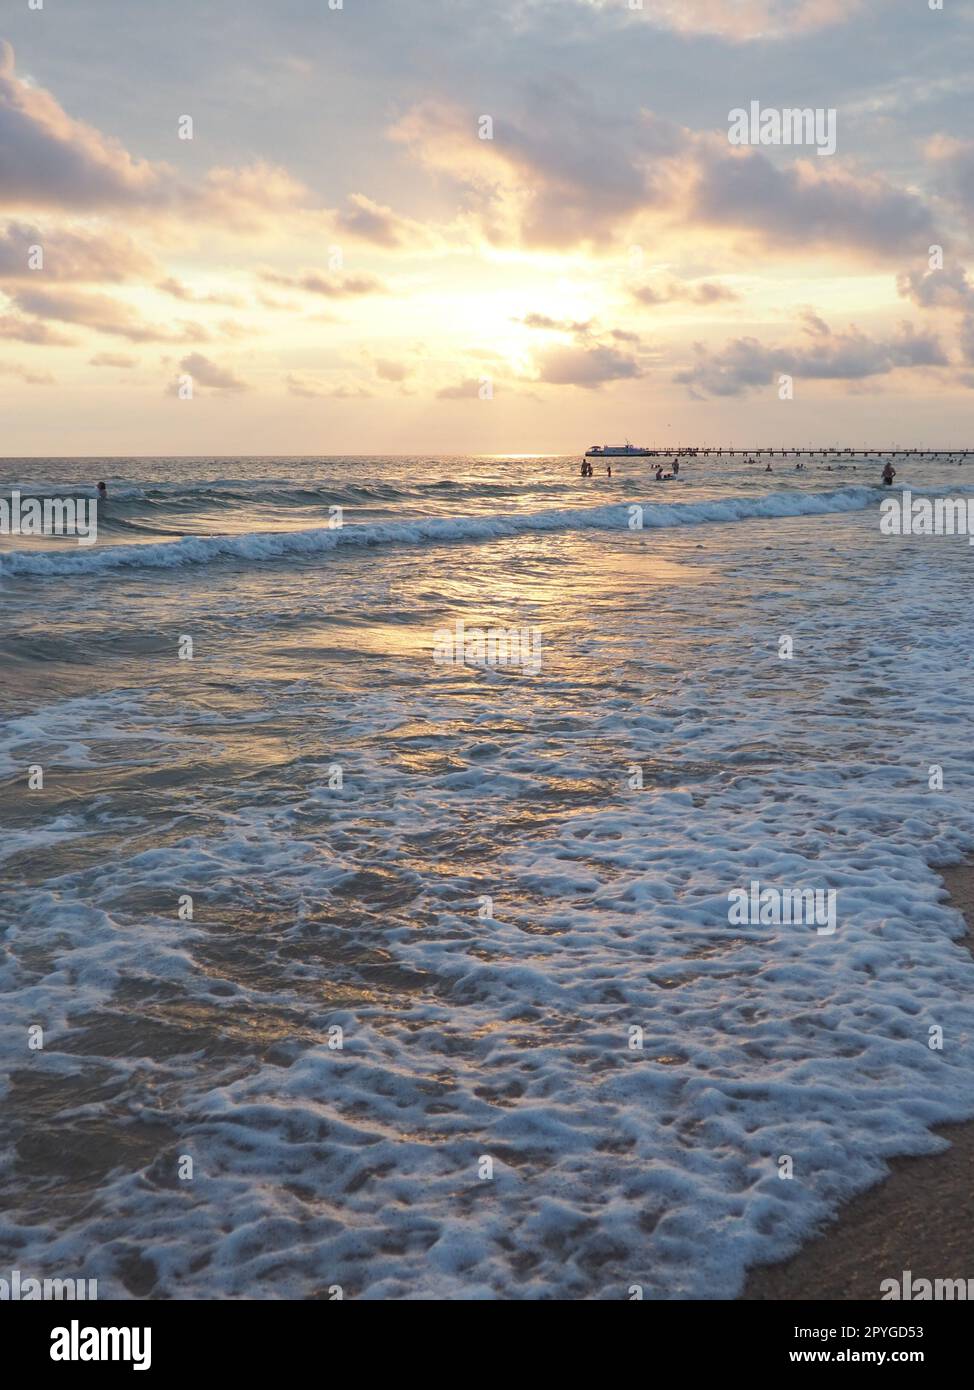 Onde e tramonti sul mare. Bel tramonto. Le onde schiumose si infrangono sulla spiaggia sabbiosa. Vityazevo, Anapa, Mar Nero. Mecca turistica, centro benessere. Cielo serale. I raggi si riflettono sull'acqua. Foto Stock